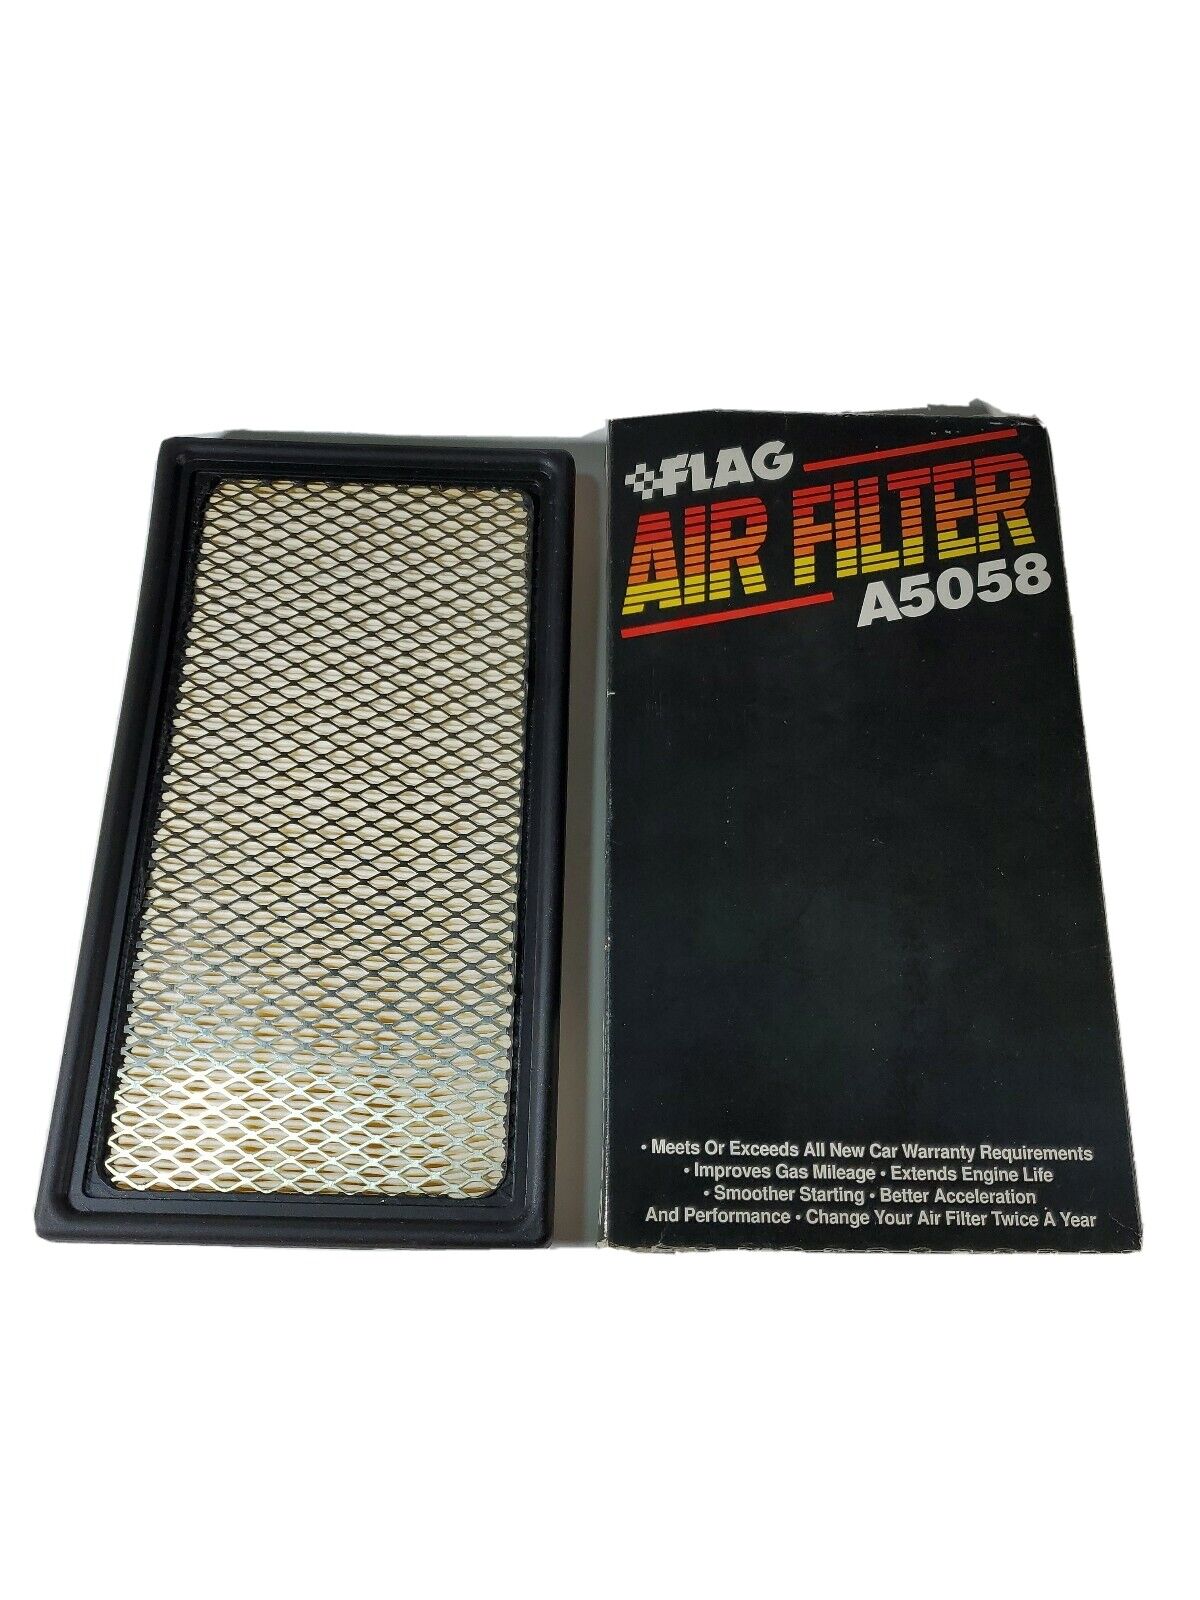 Flag A5058 Air Filter fits Ford Taurus, Ranger, Mercury Sable, Mazda B3000/4000